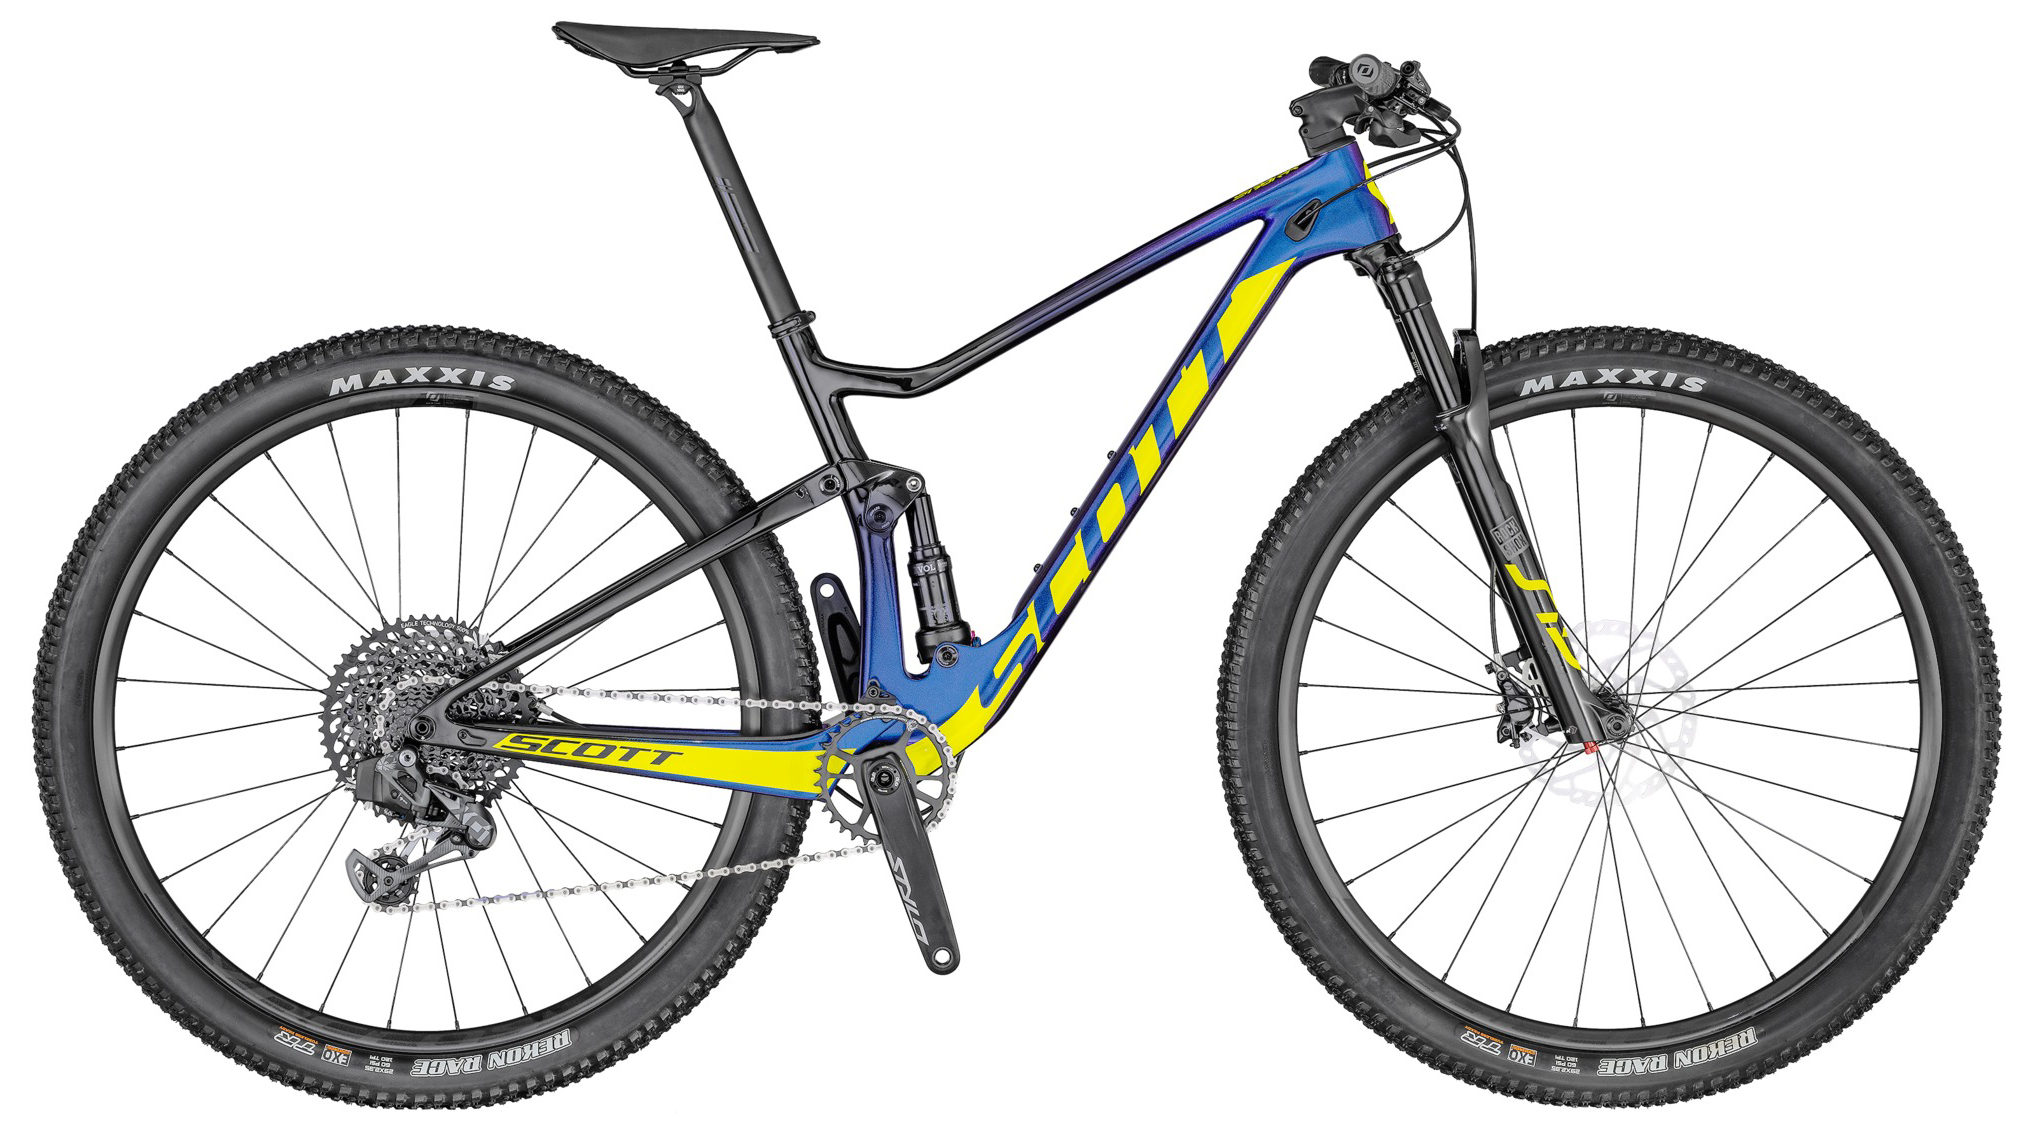  Отзывы о Двухподвесном велосипеде Scott Spark RC 900 Team Issue AXS 2020